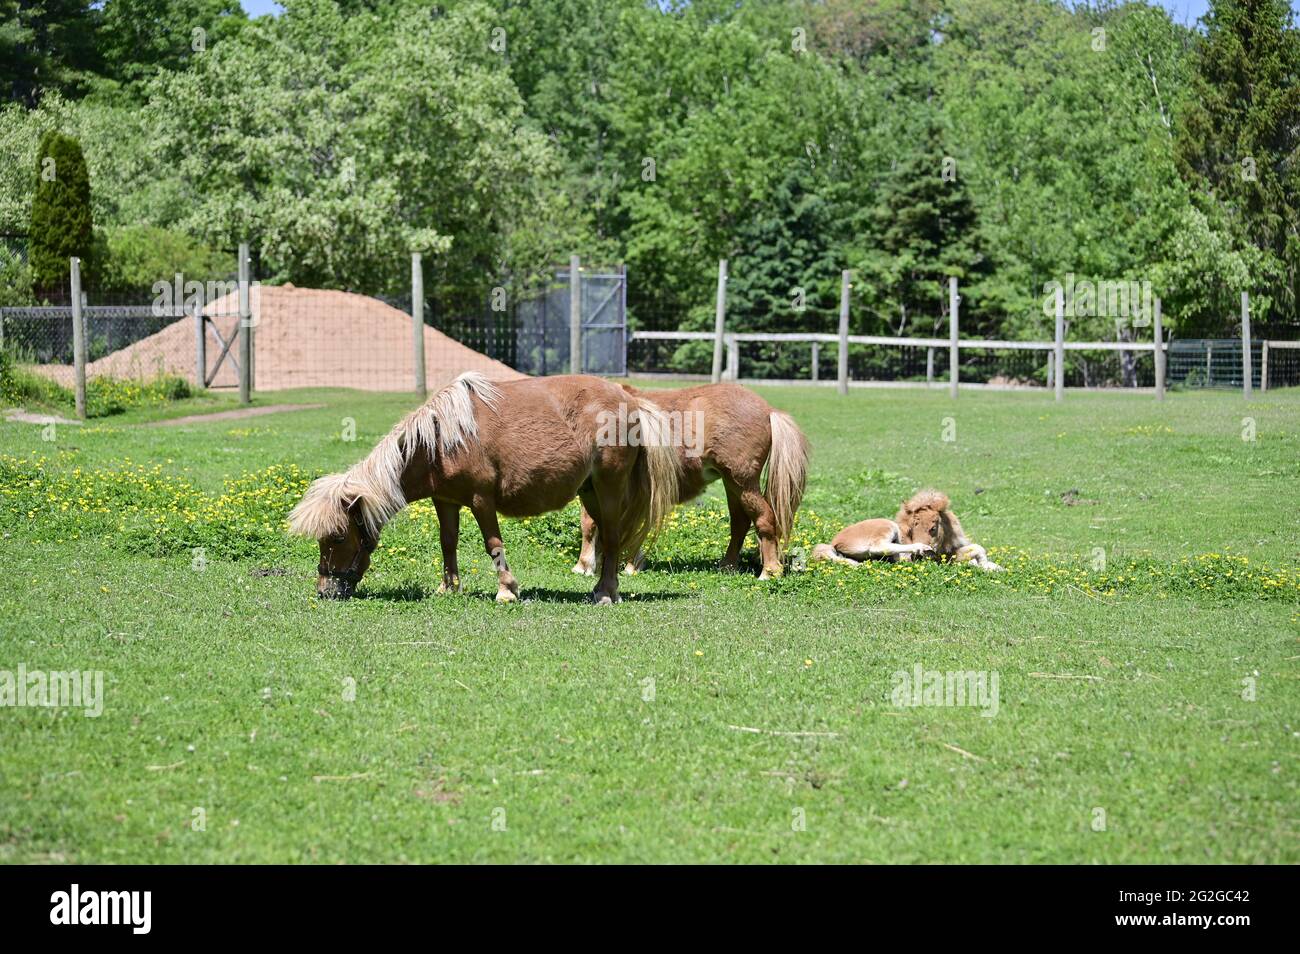 Un jeune ennemi avec leurs parents. Les poneys gallois sauvages se broutent sur l'herbe. Banque D'Images